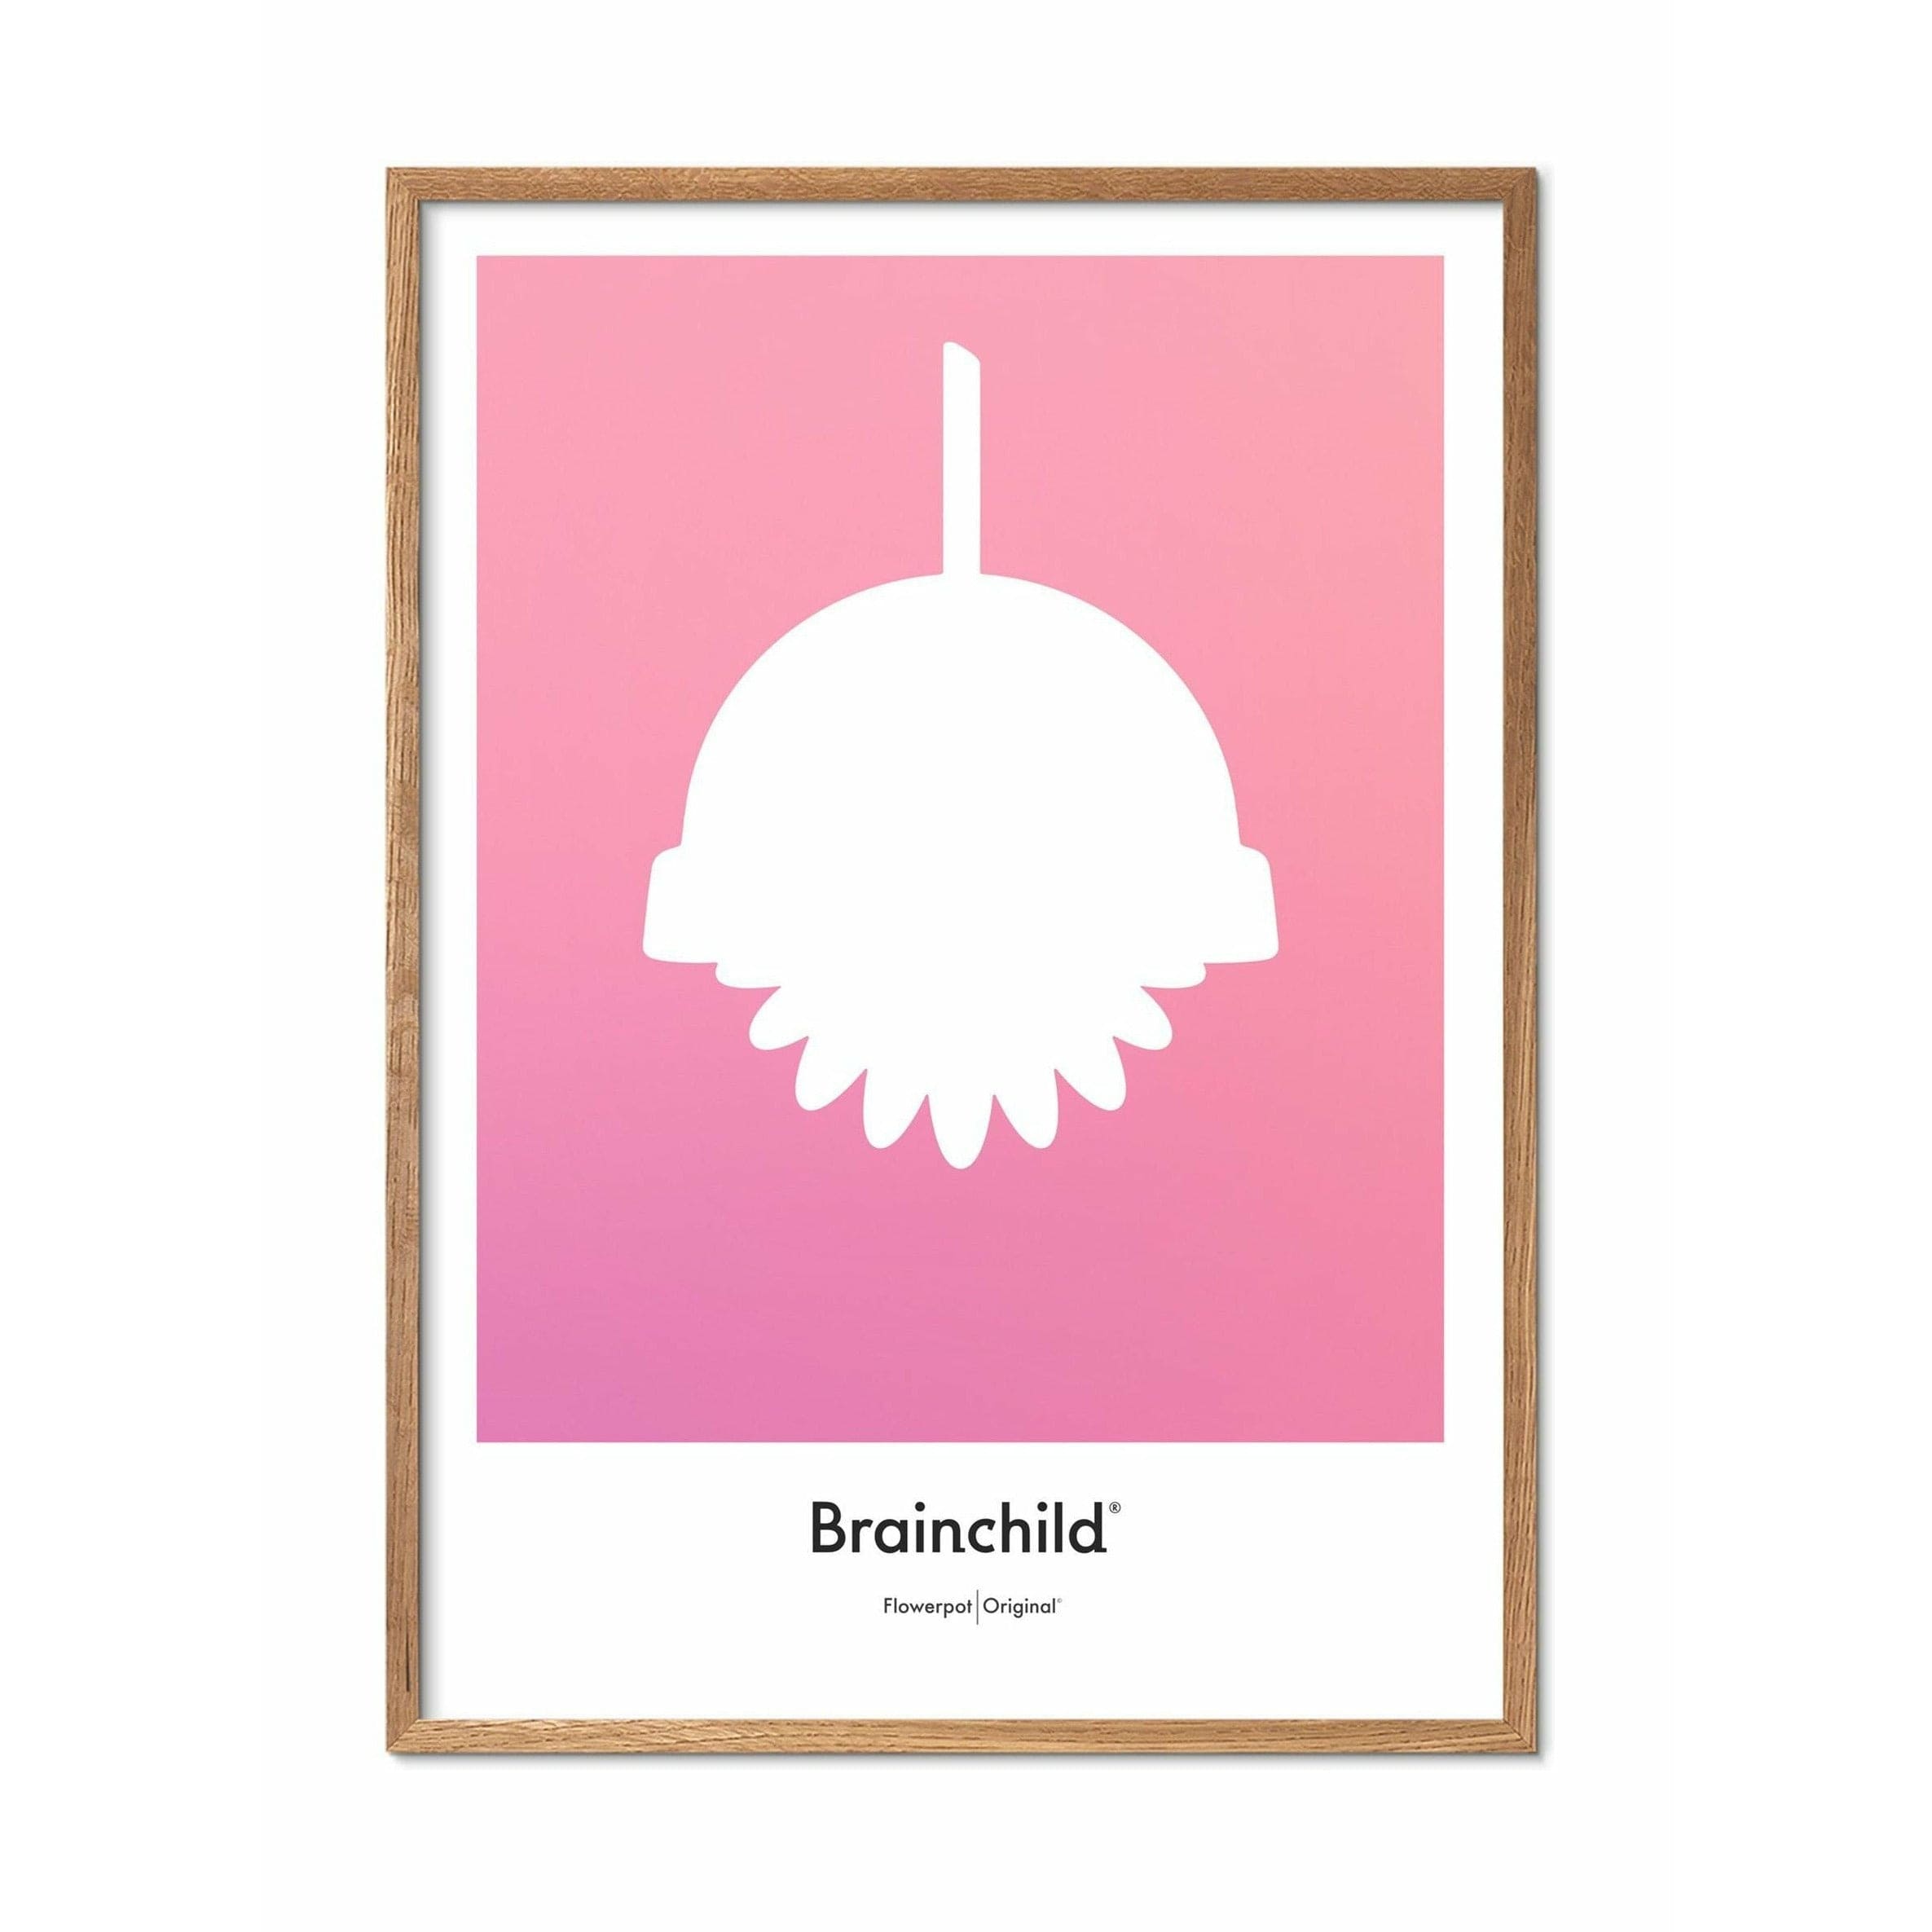 Brainchild Affiche de l'icône de conception de fleur, cadre en bois léger A5, rose